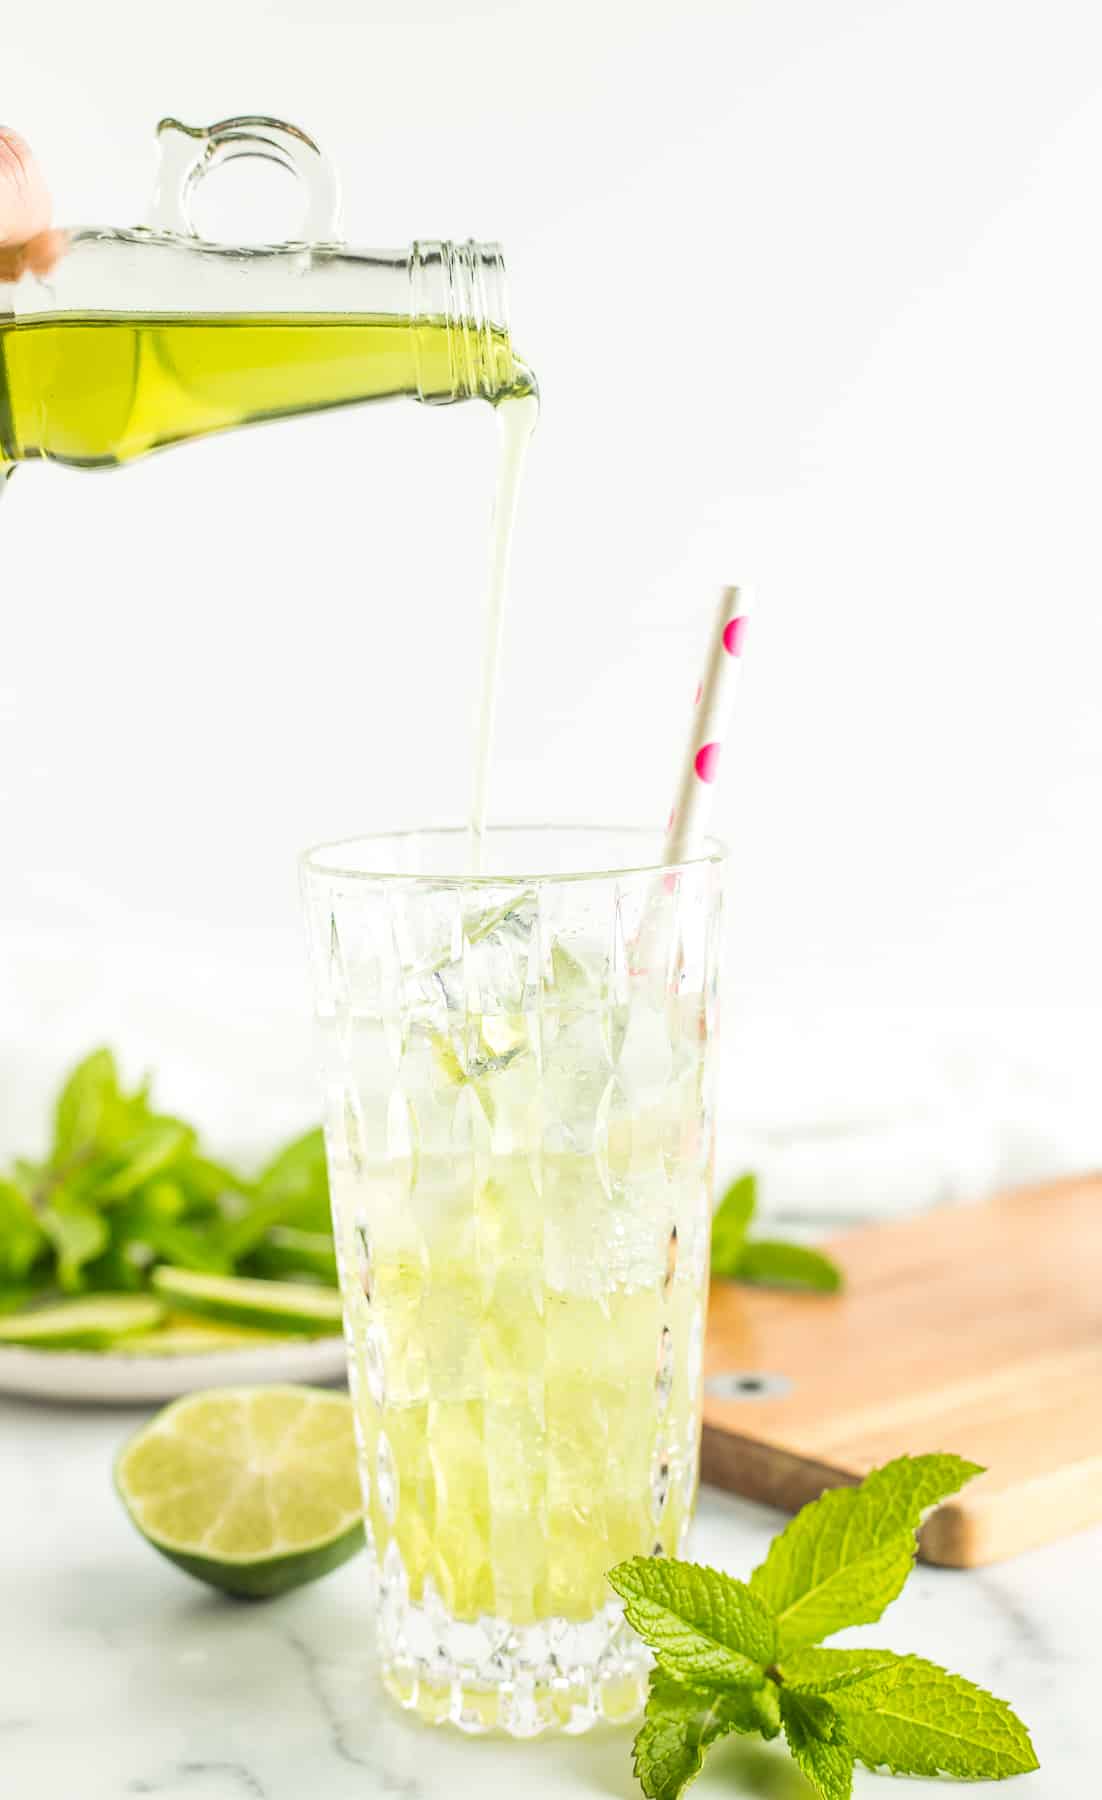 eine Flasche, die eine grüne Flüssigkeit in ein mit Sprudelwasser und Eiswürfeln gefülltes Glas gießt.